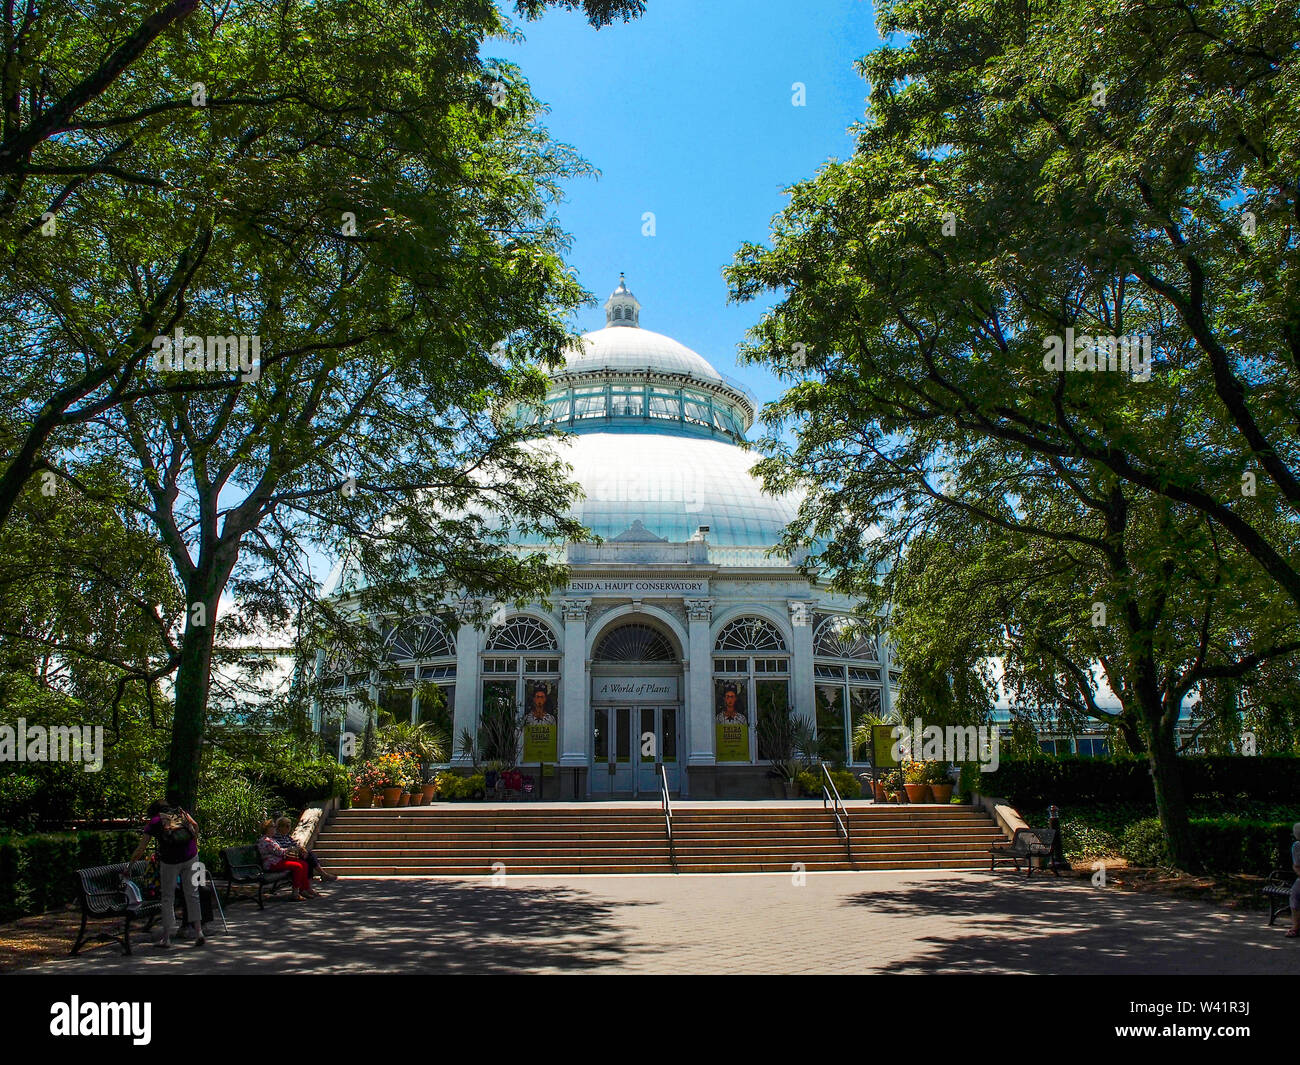 New York - États-Unis, le 26 juin 2015 -L'Enid Haupt Conservatory à New York Botanical Gardenin New York City Banque D'Images